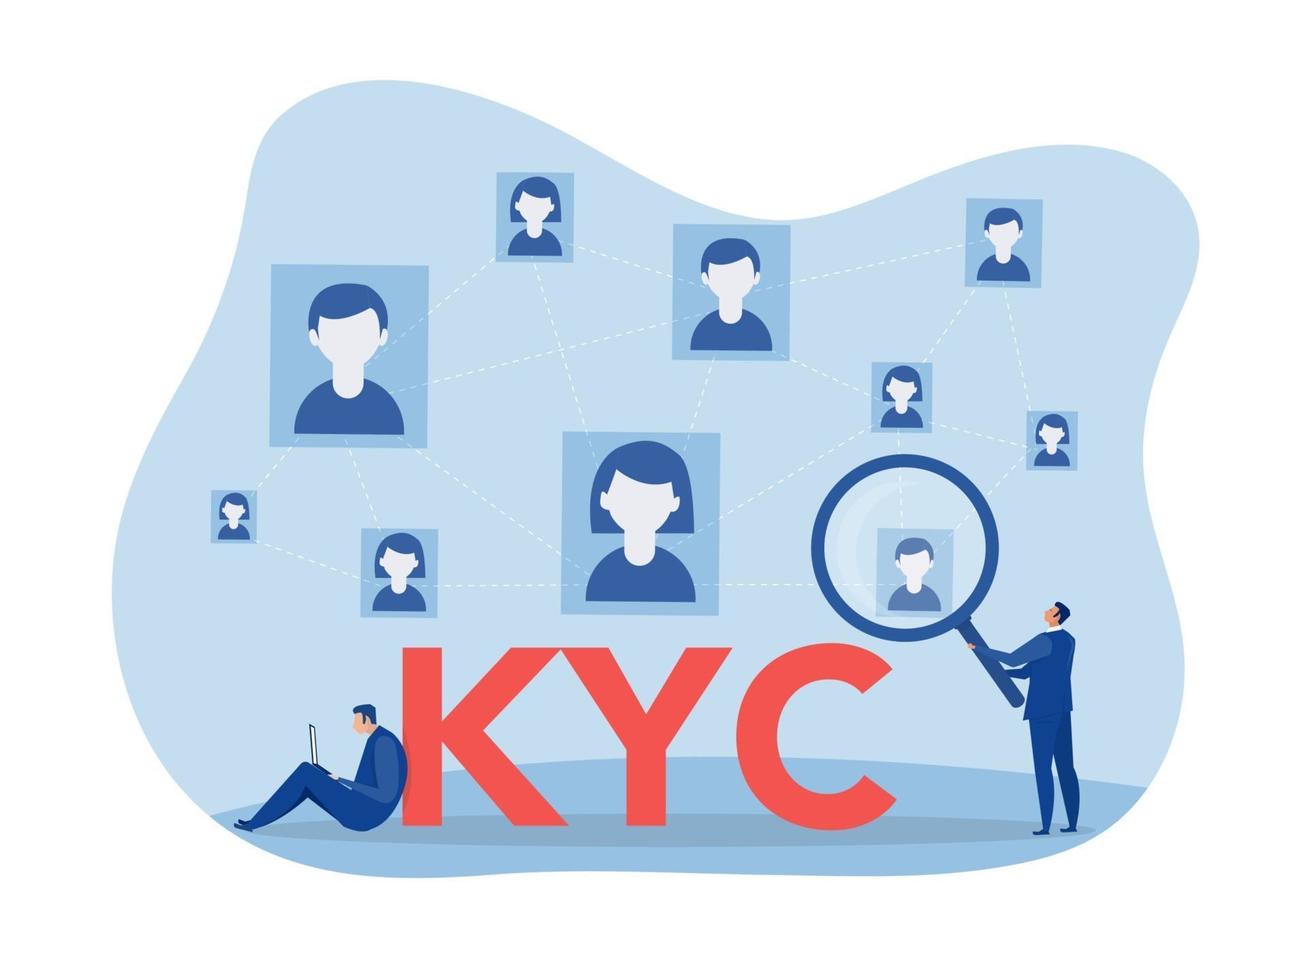 kyc o conozca a su cliente con el negocio verificando la identidad del concepto de sus clientes en los futuros socios a través de un ilustrador de vectores de lupa